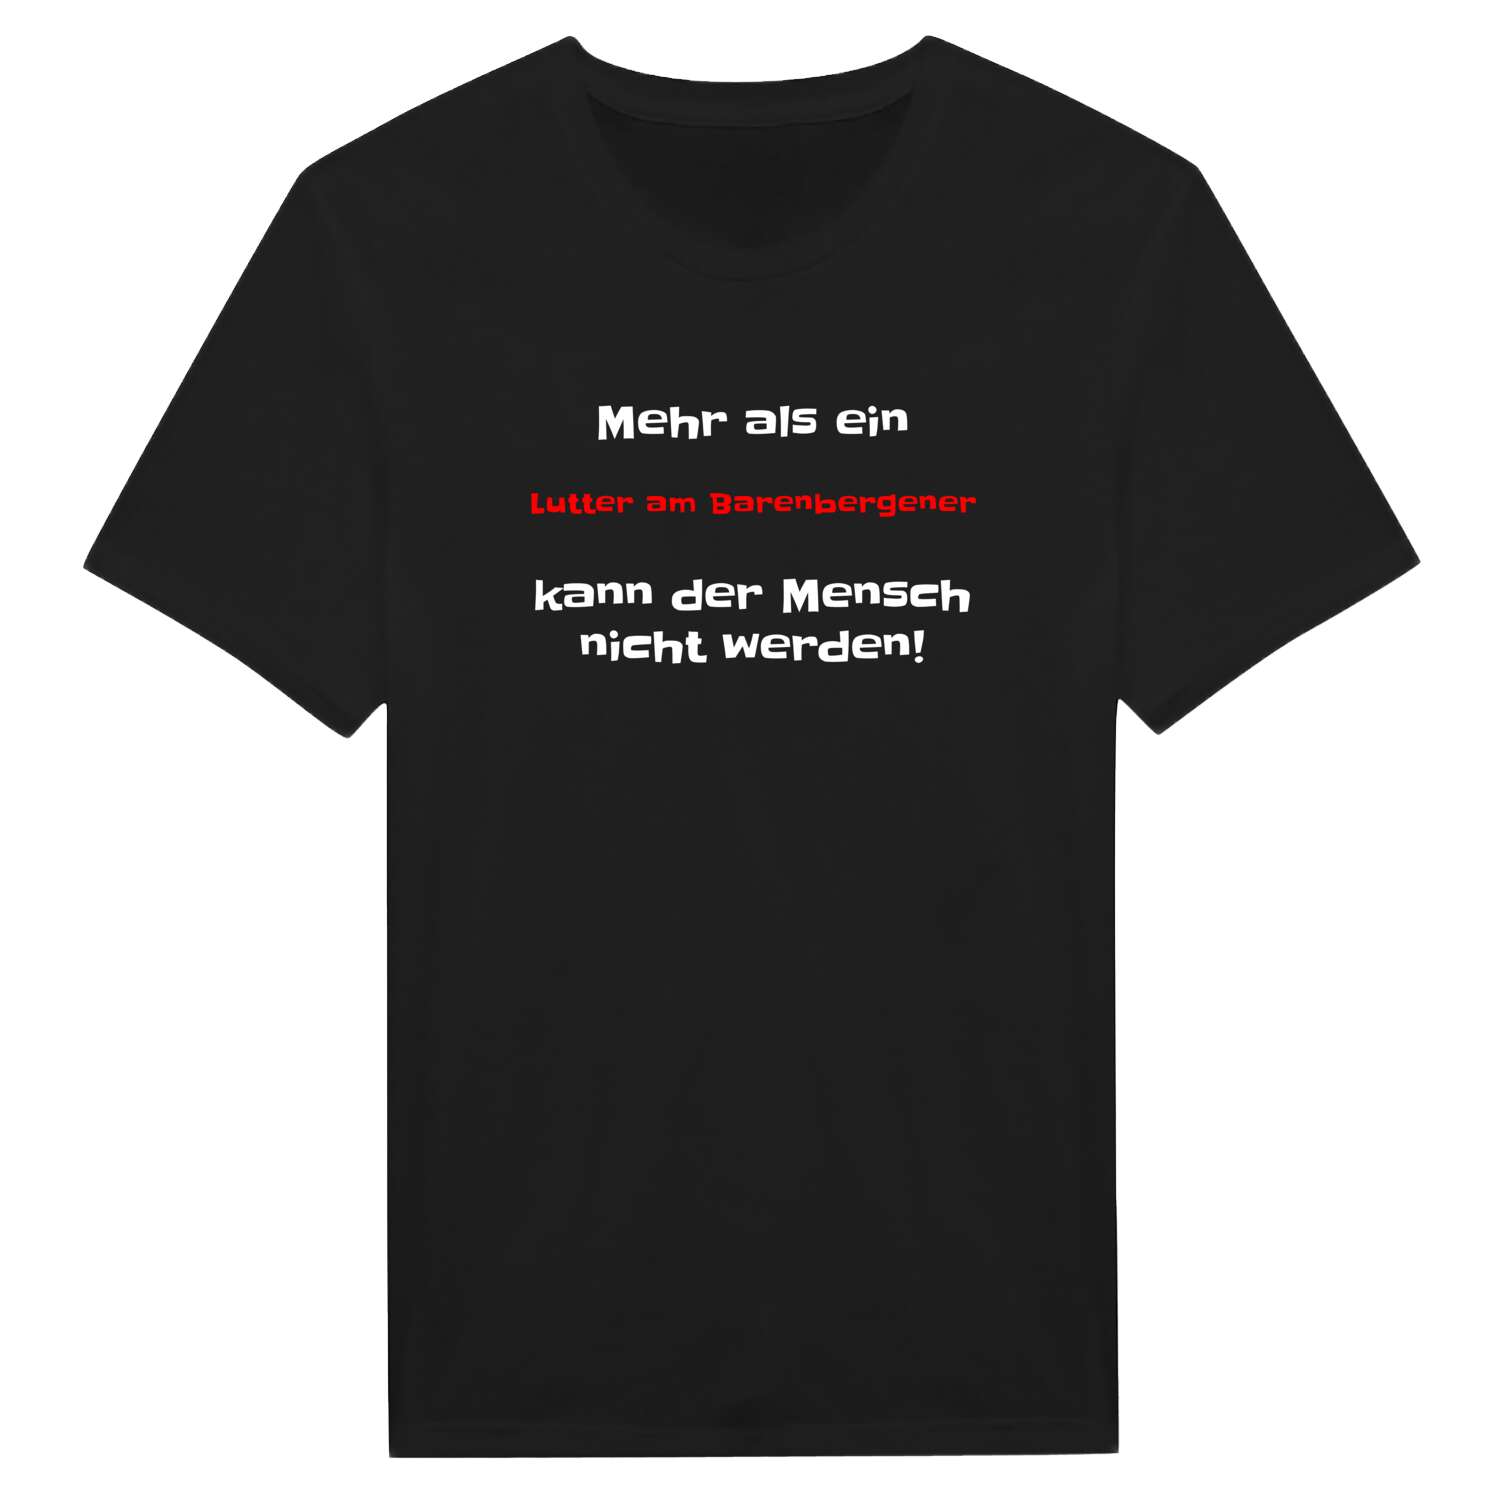 Lutter am Barenberge T-Shirt »Mehr als ein«